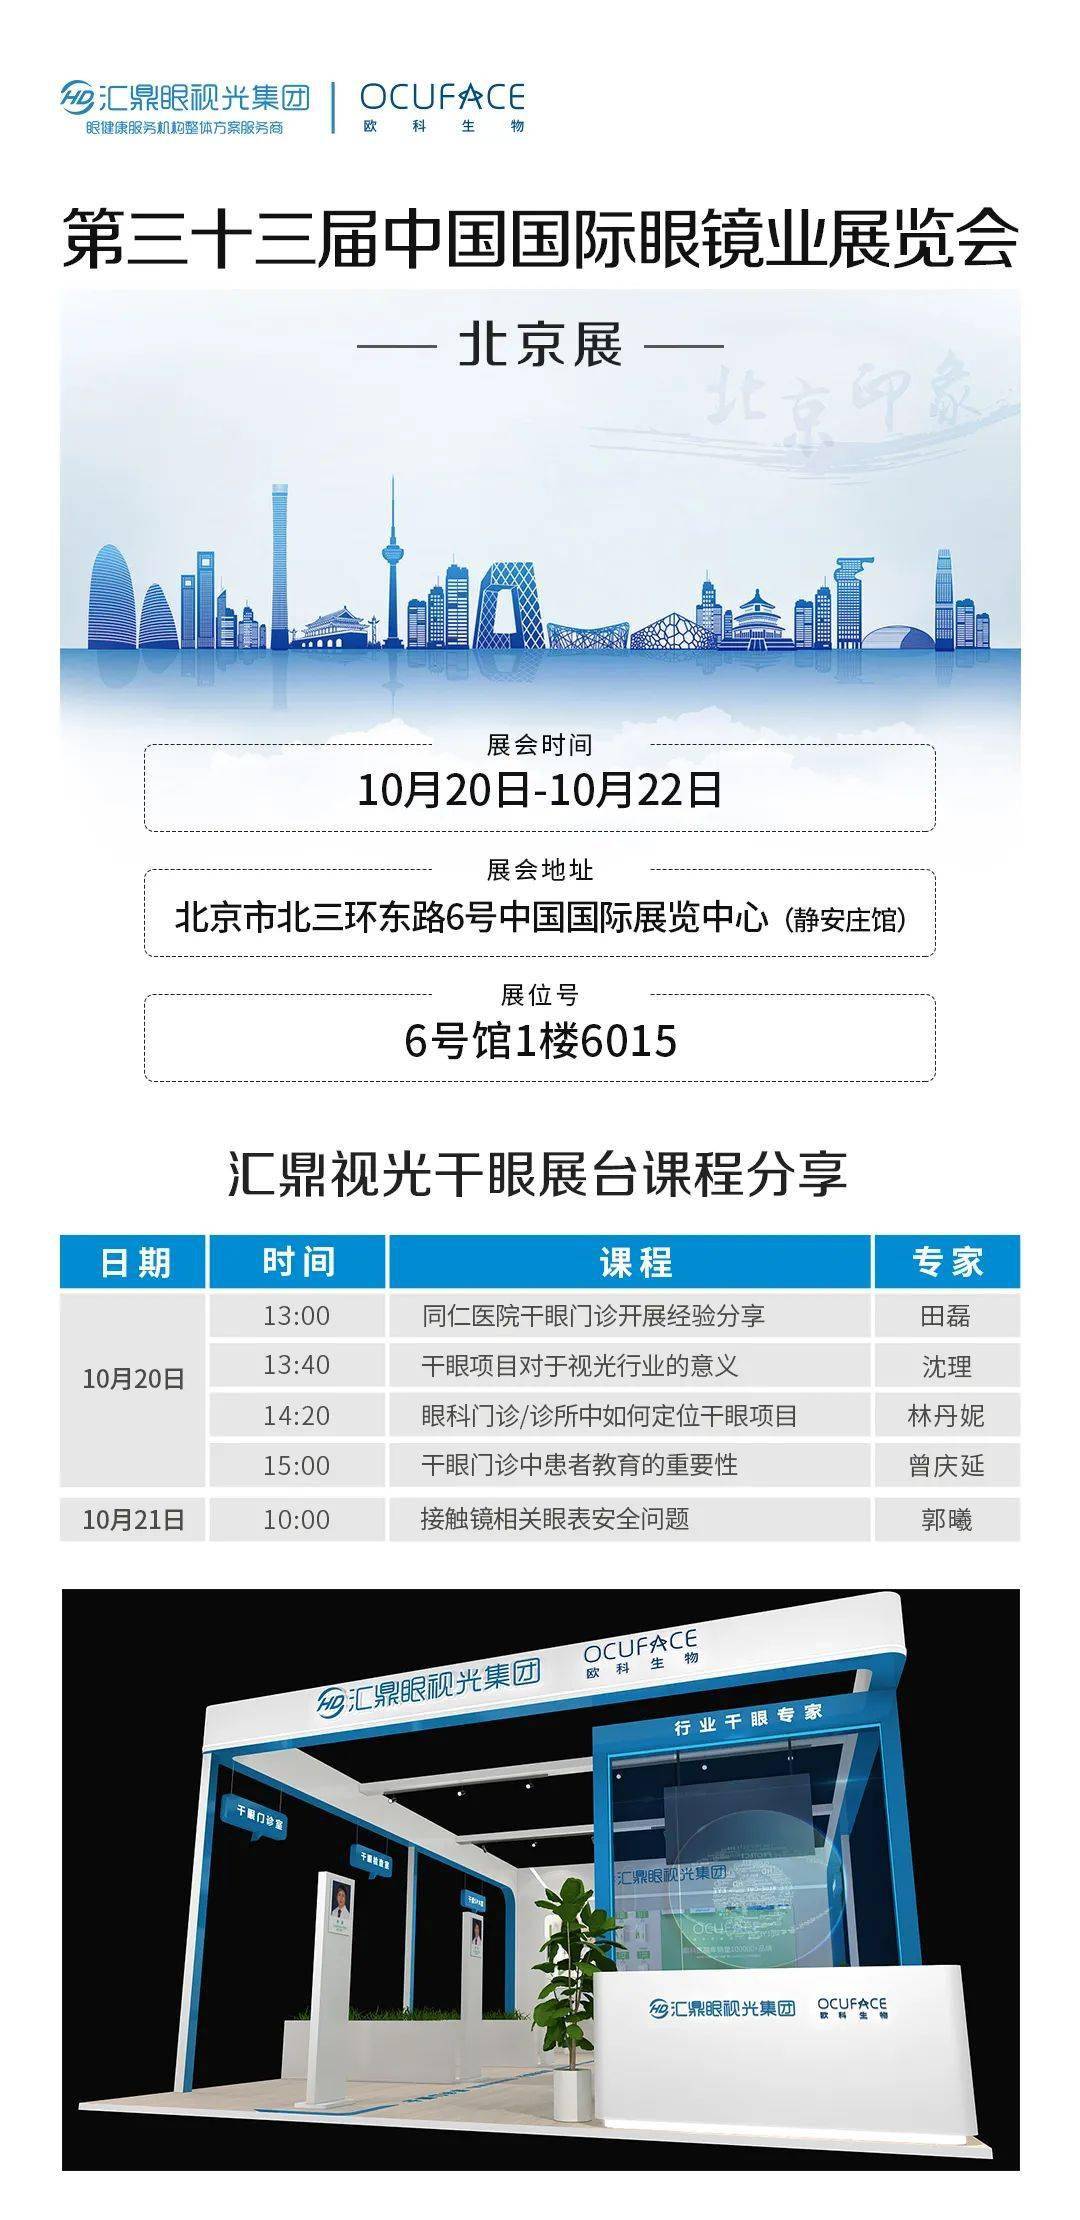 2021年10月20日北京国际眼镜展ocuface(欧科生物)联合汇鼎视光为您